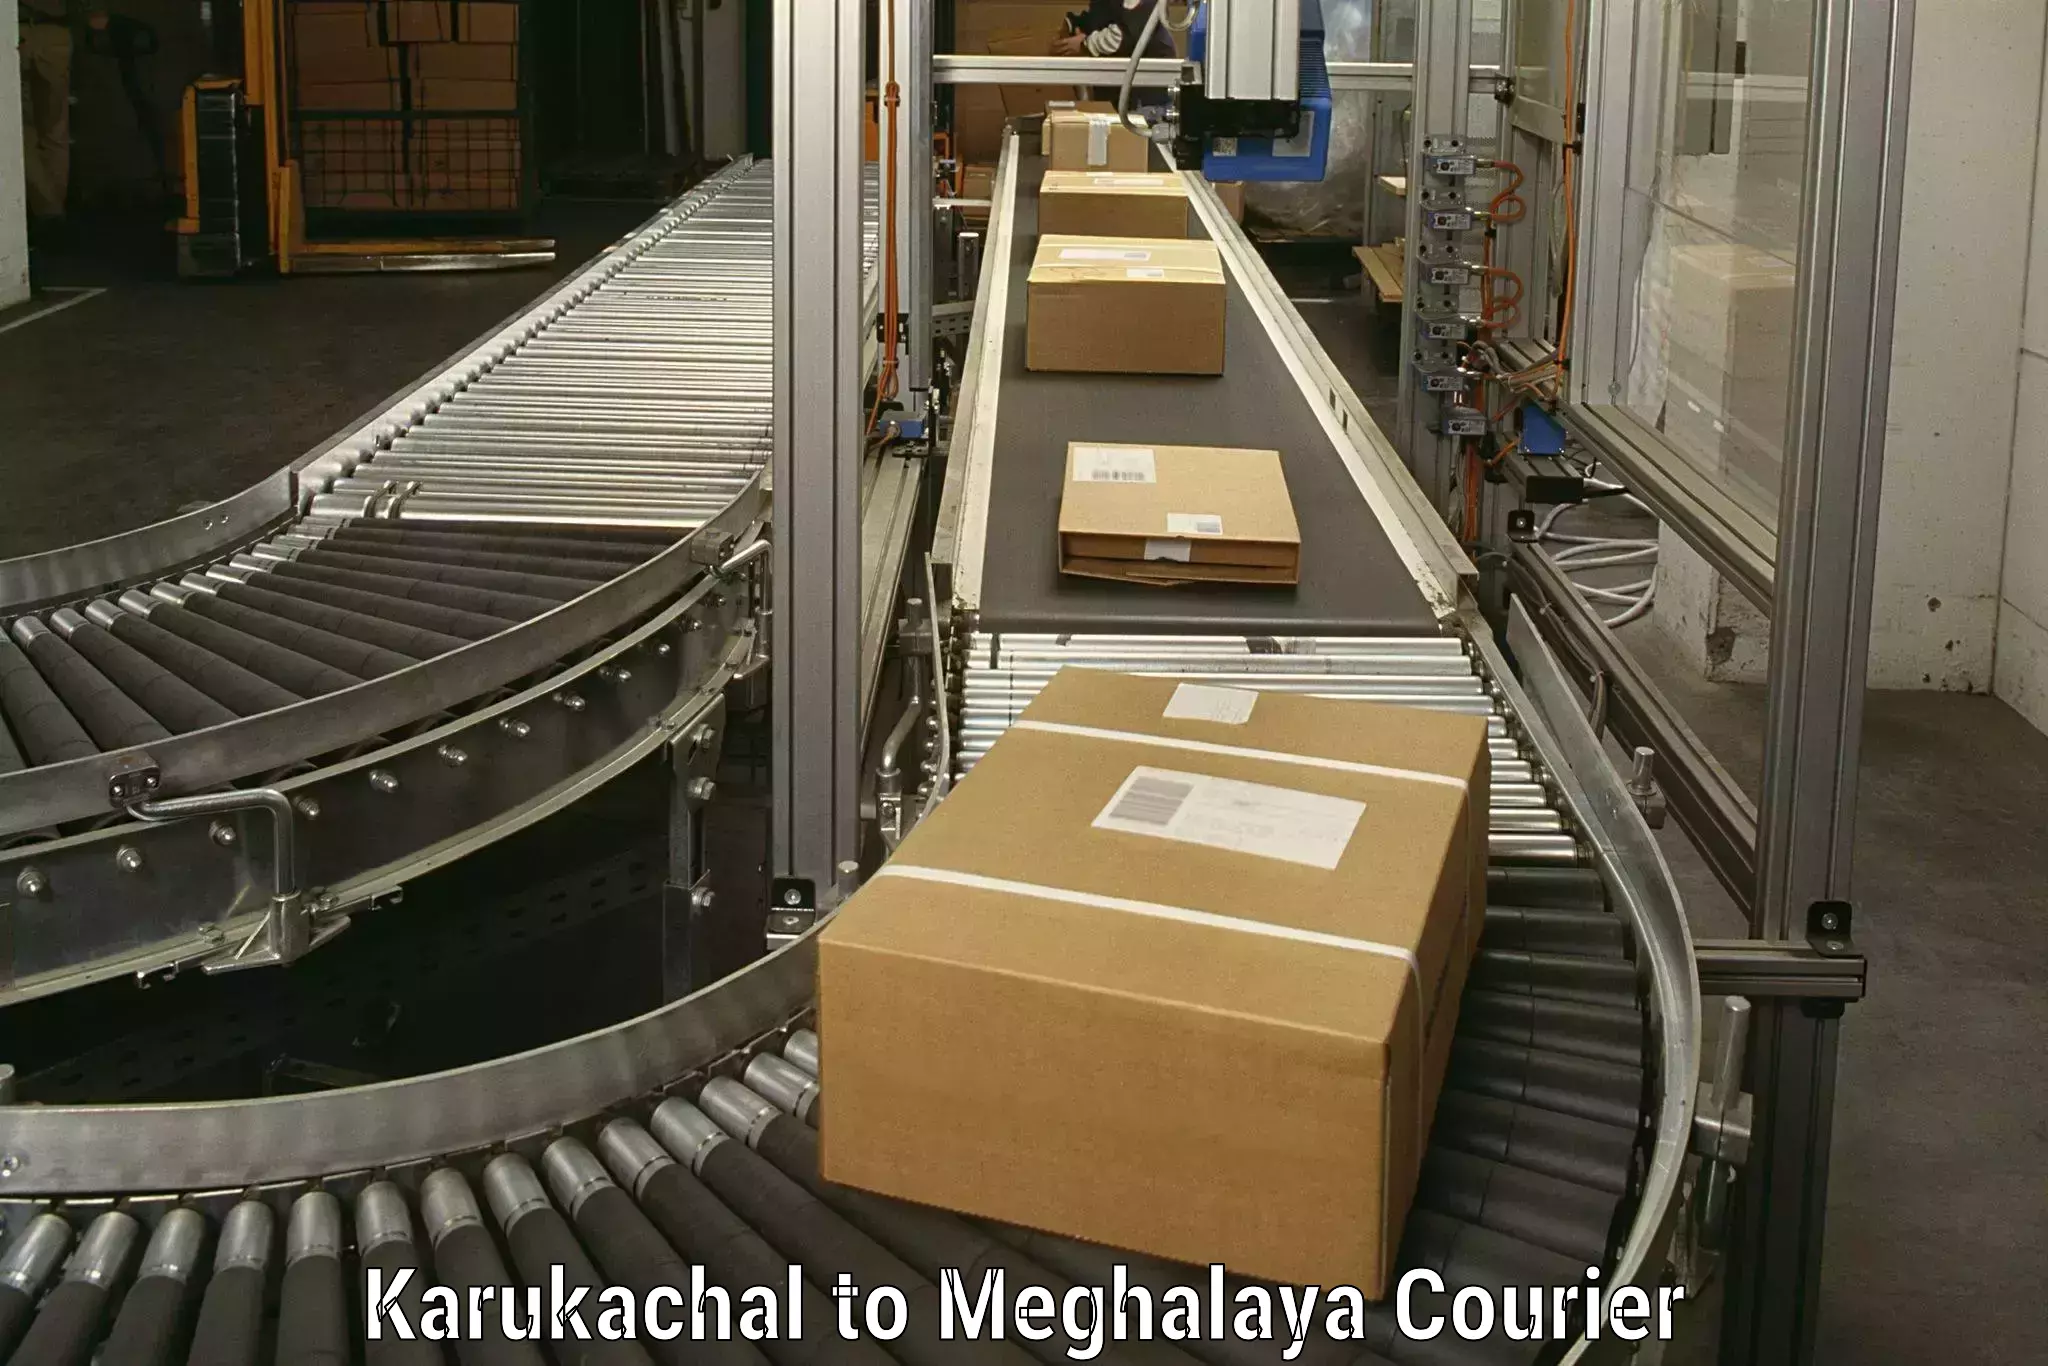 Furniture transport solutions Karukachal to Meghalaya